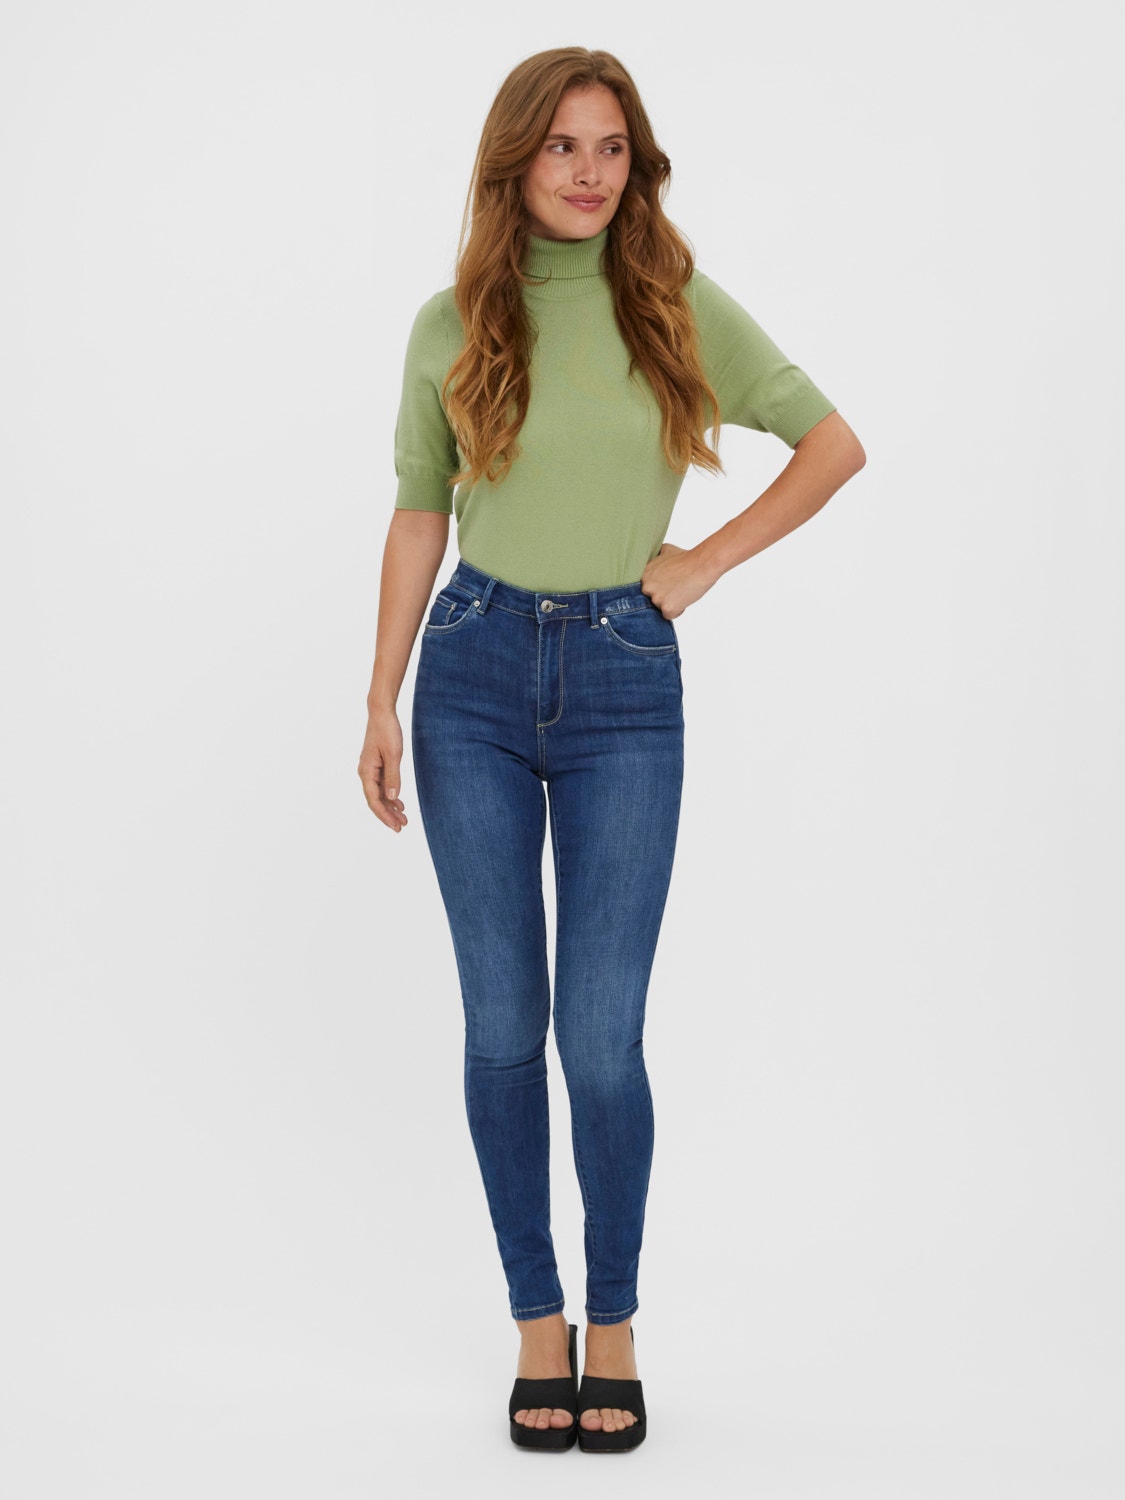 Vero Moda VMSOPHIA Høj talje Skinny fit Jeans -Medium Blue Denim - 10268548